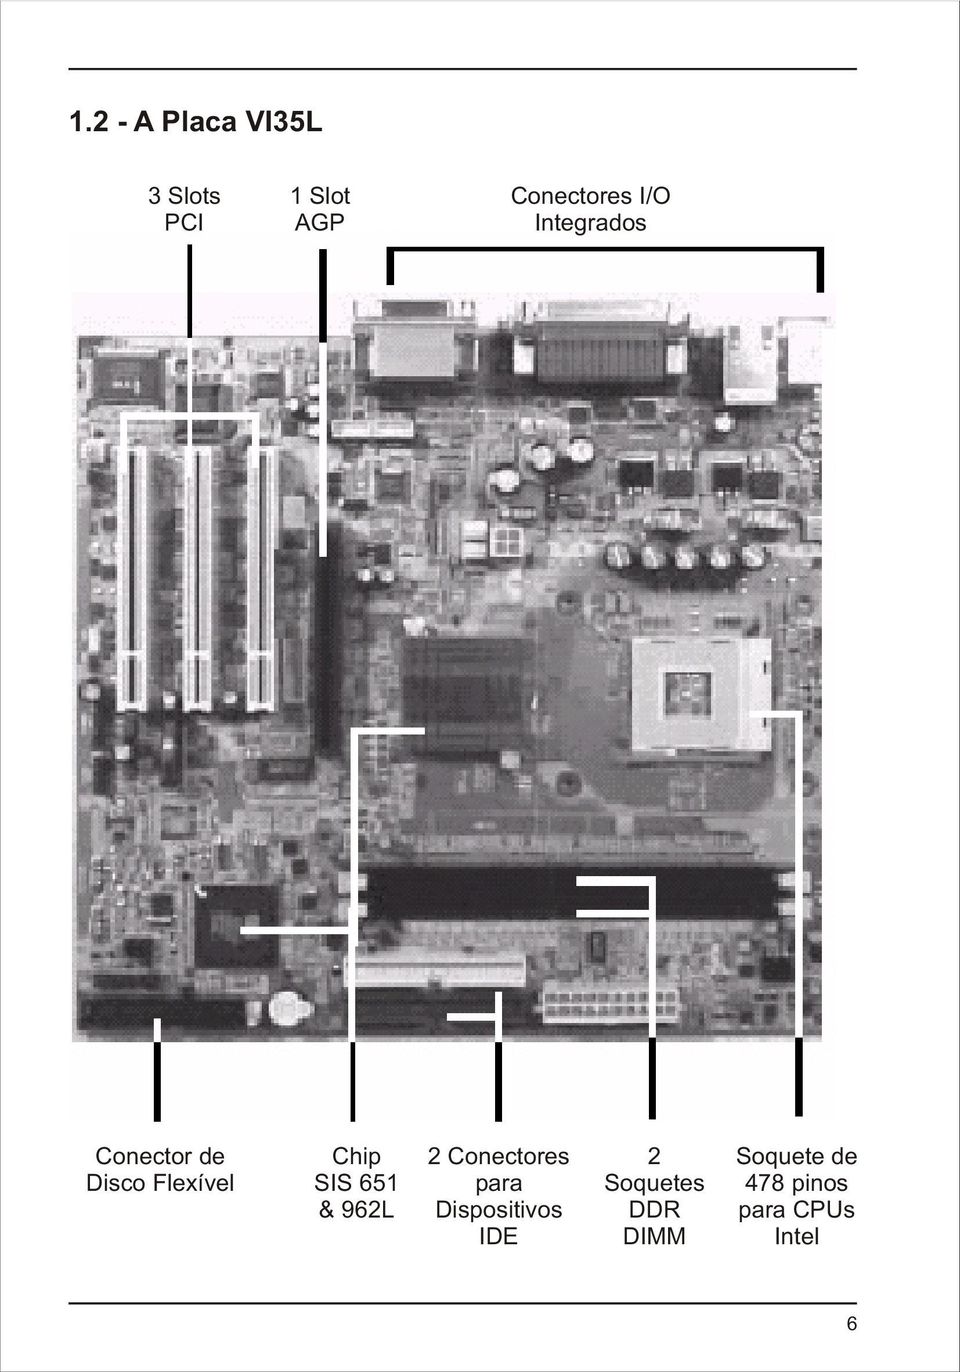 Chip SIS 651 & 962L 2 Conectores para Dispositivos